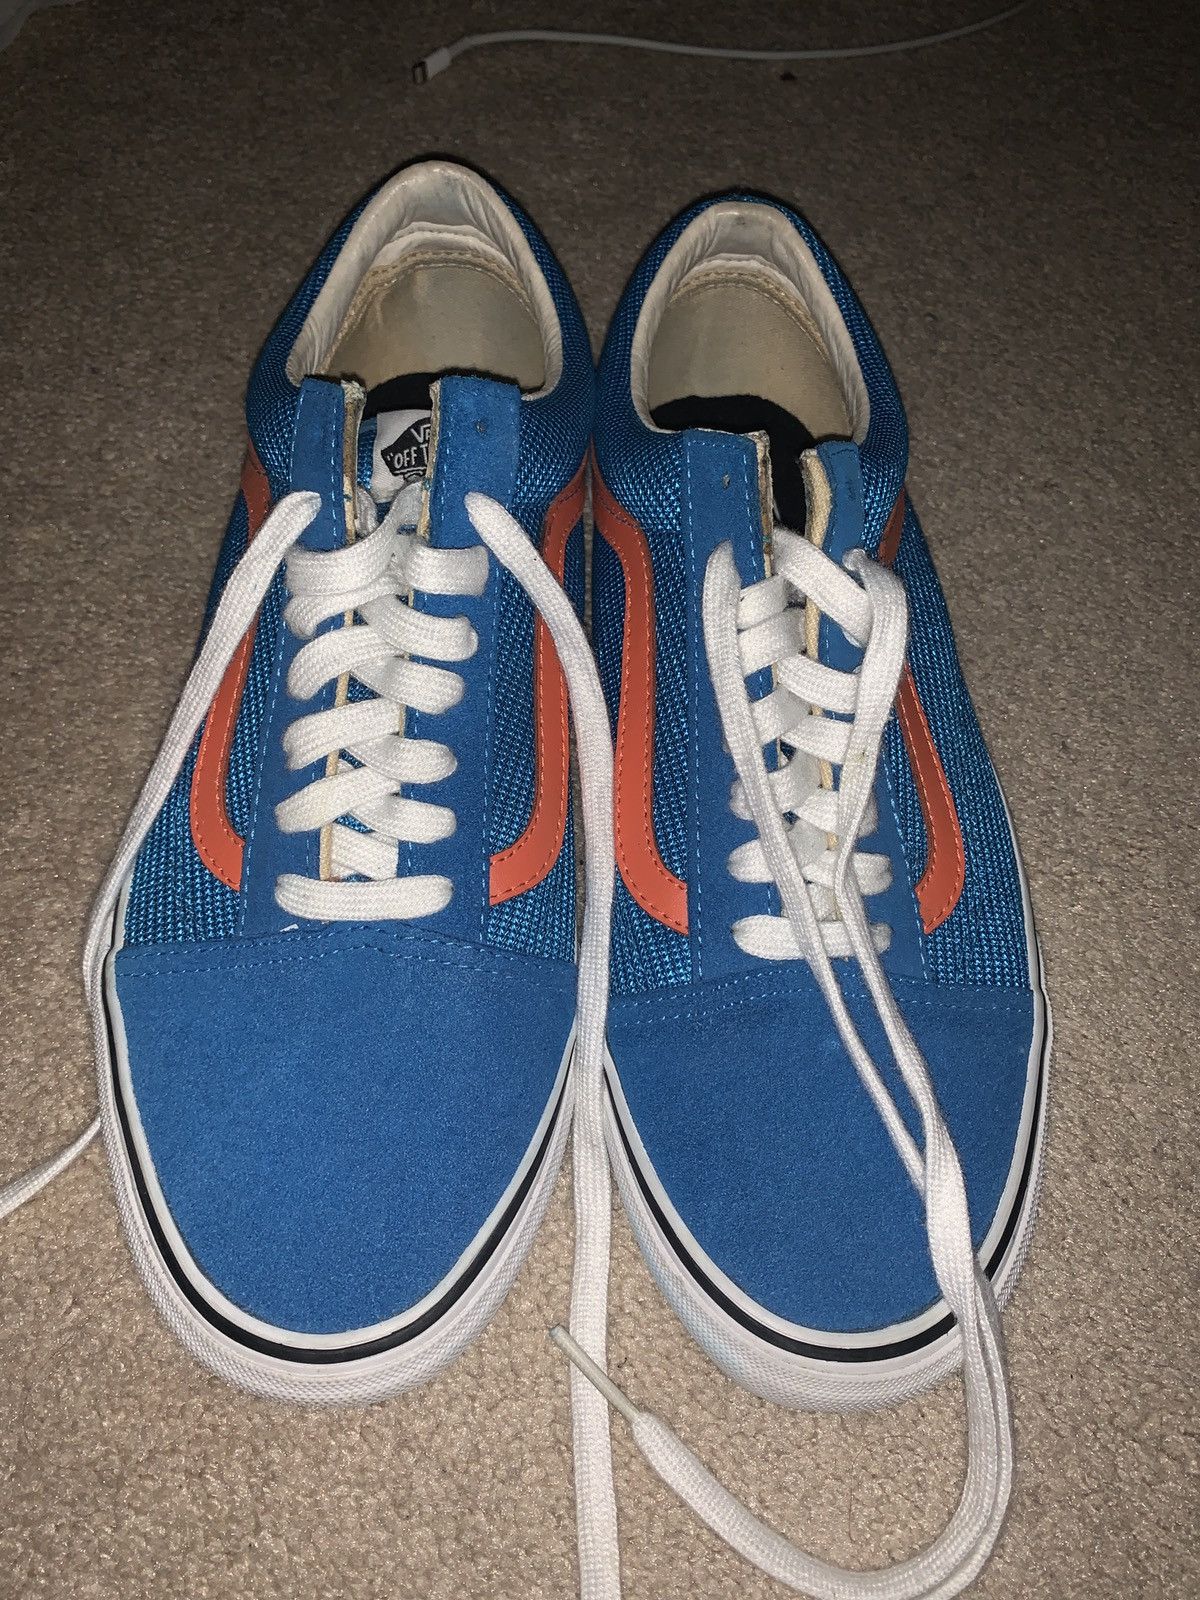 Supreme Supreme Vans Blue Old Skool Shoes SS 11 | Grailed